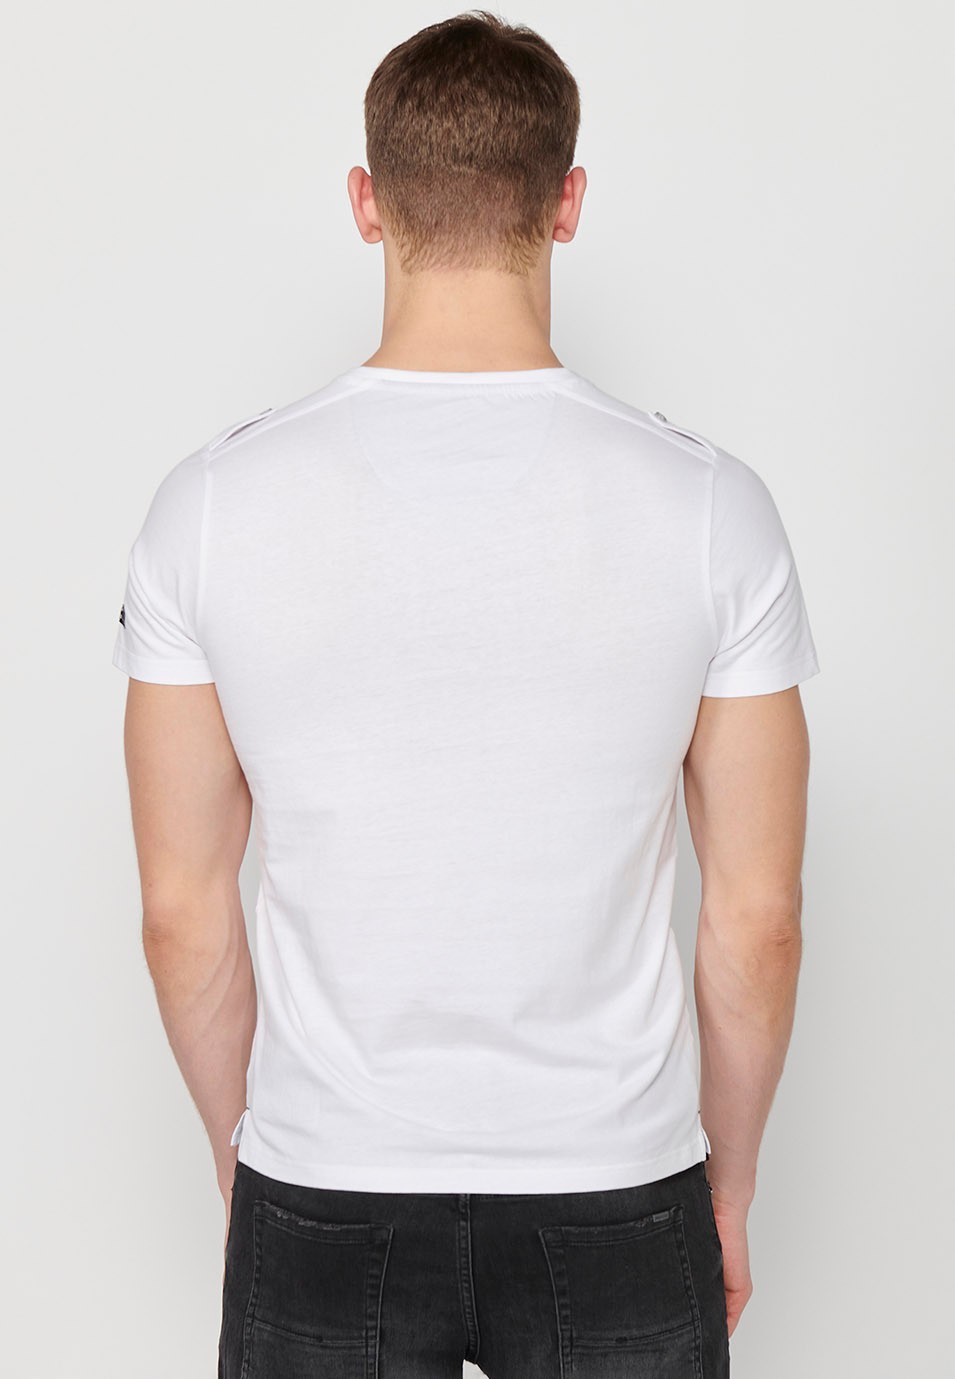 Samarreta de màniga curta de cotó, coll rodó amb obertura botonada, color blanc per a home